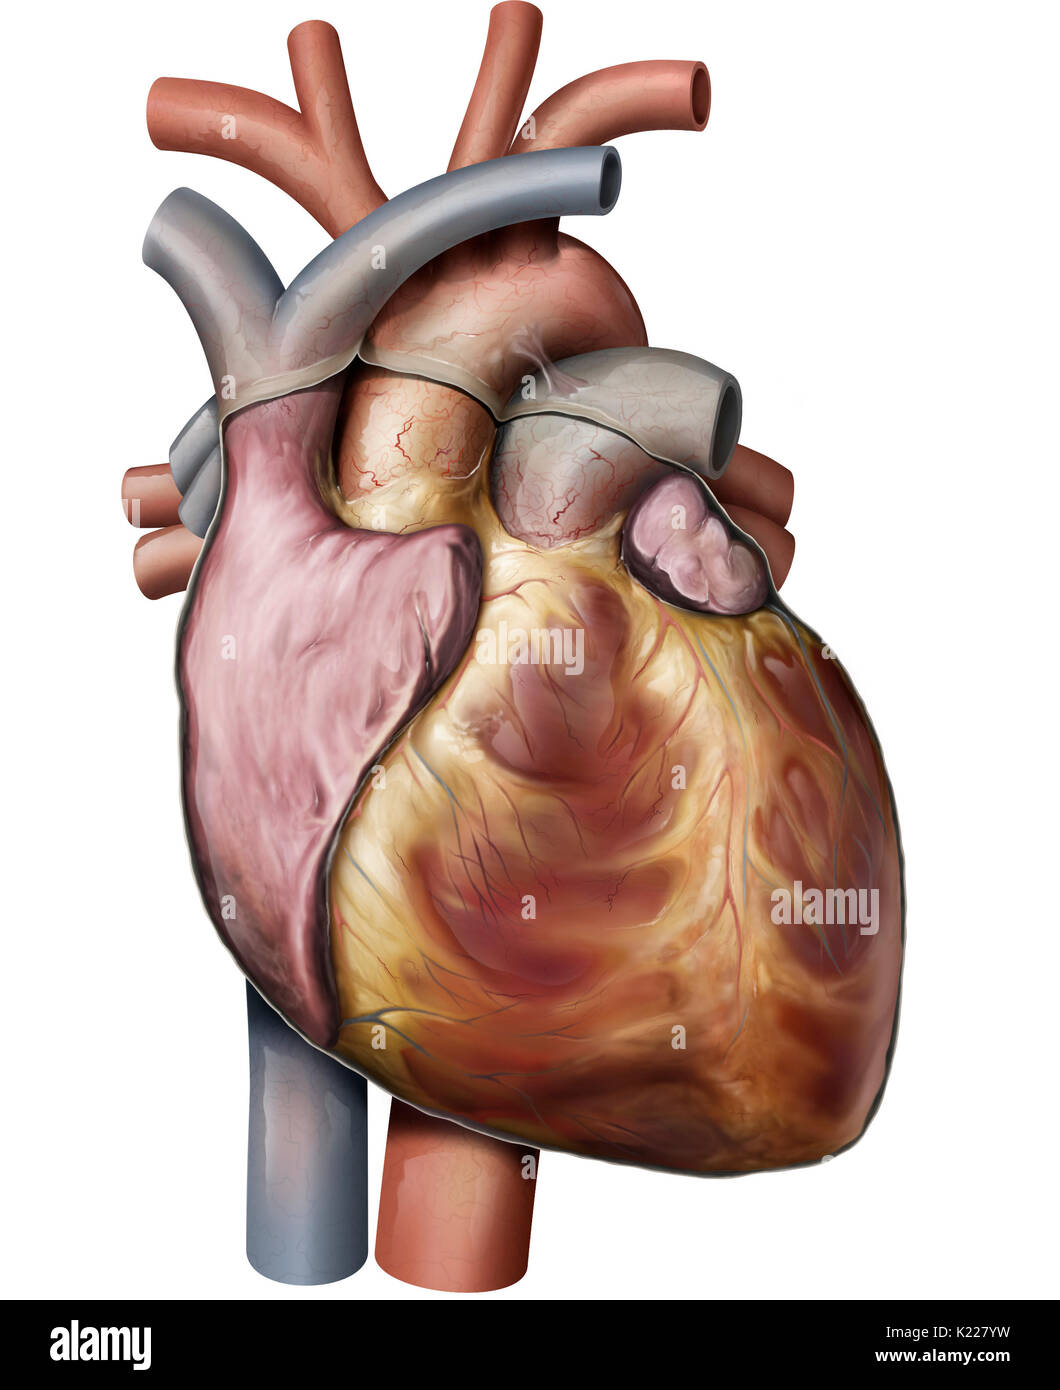 Das Herz ist ein muskulöses Organ aus vier Kammern; seine regelmäßige rhythmische Kontraktionen Pumpe und zirkulieren im Blut. Stockfoto